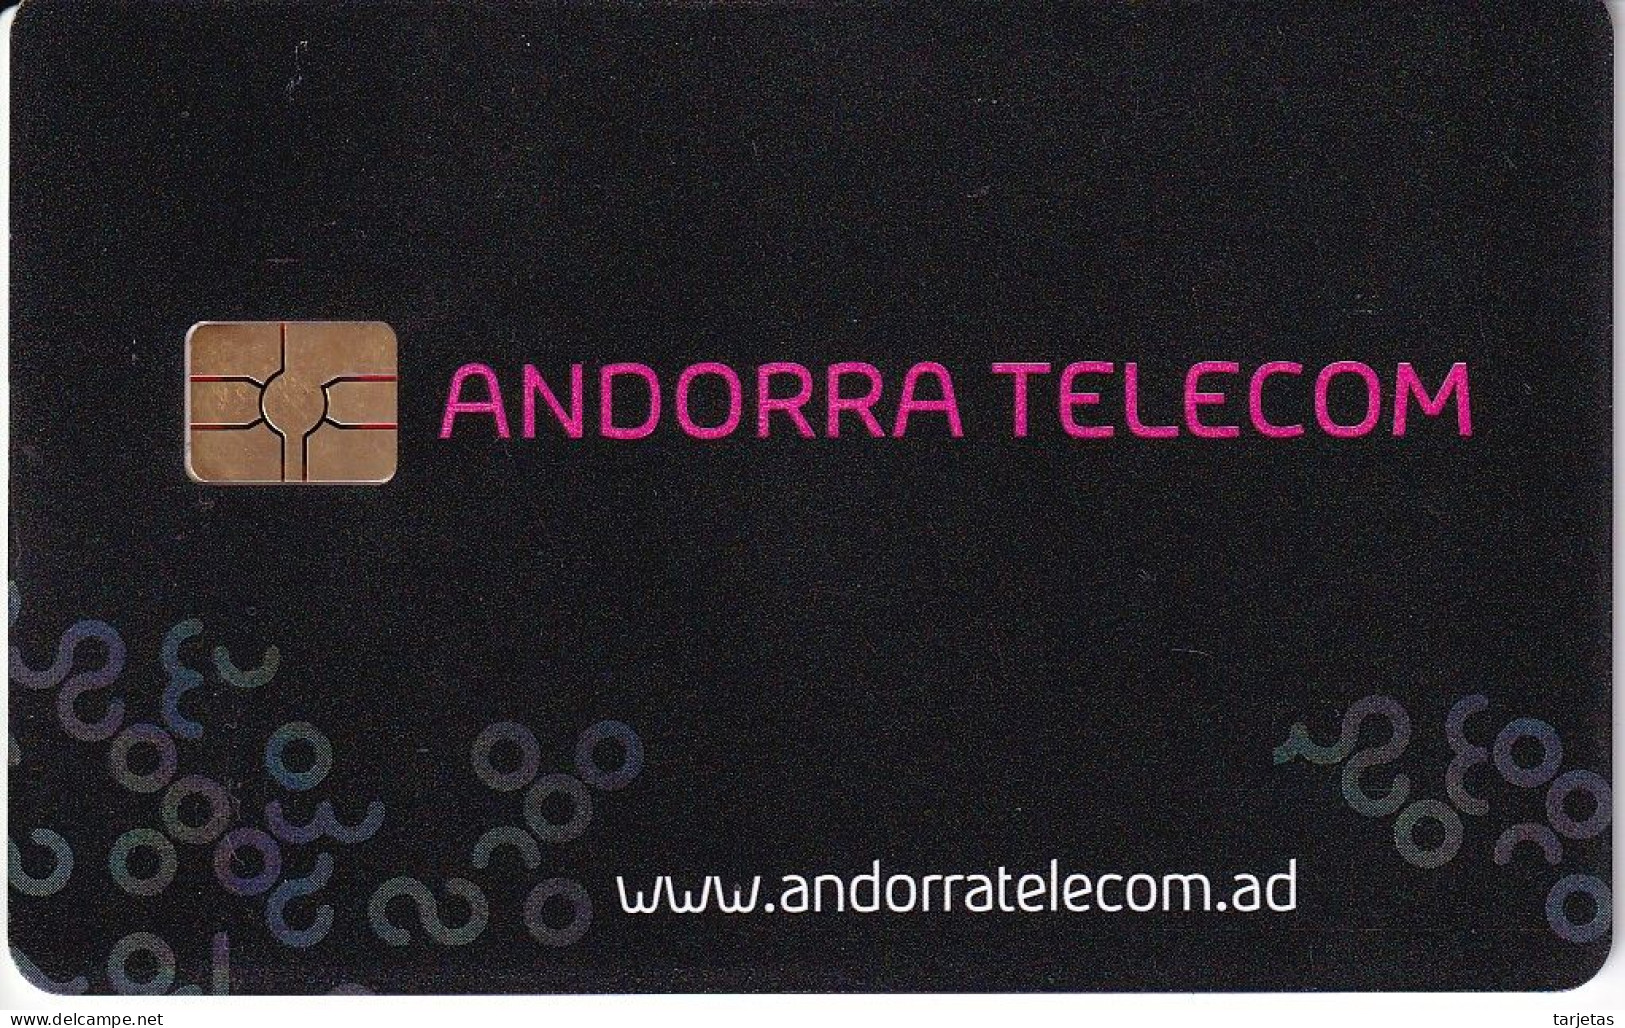 AND-162 TARJETA DE ANDORRA TELECOM DE 6 EUROS DEL 07/09 - Andorra